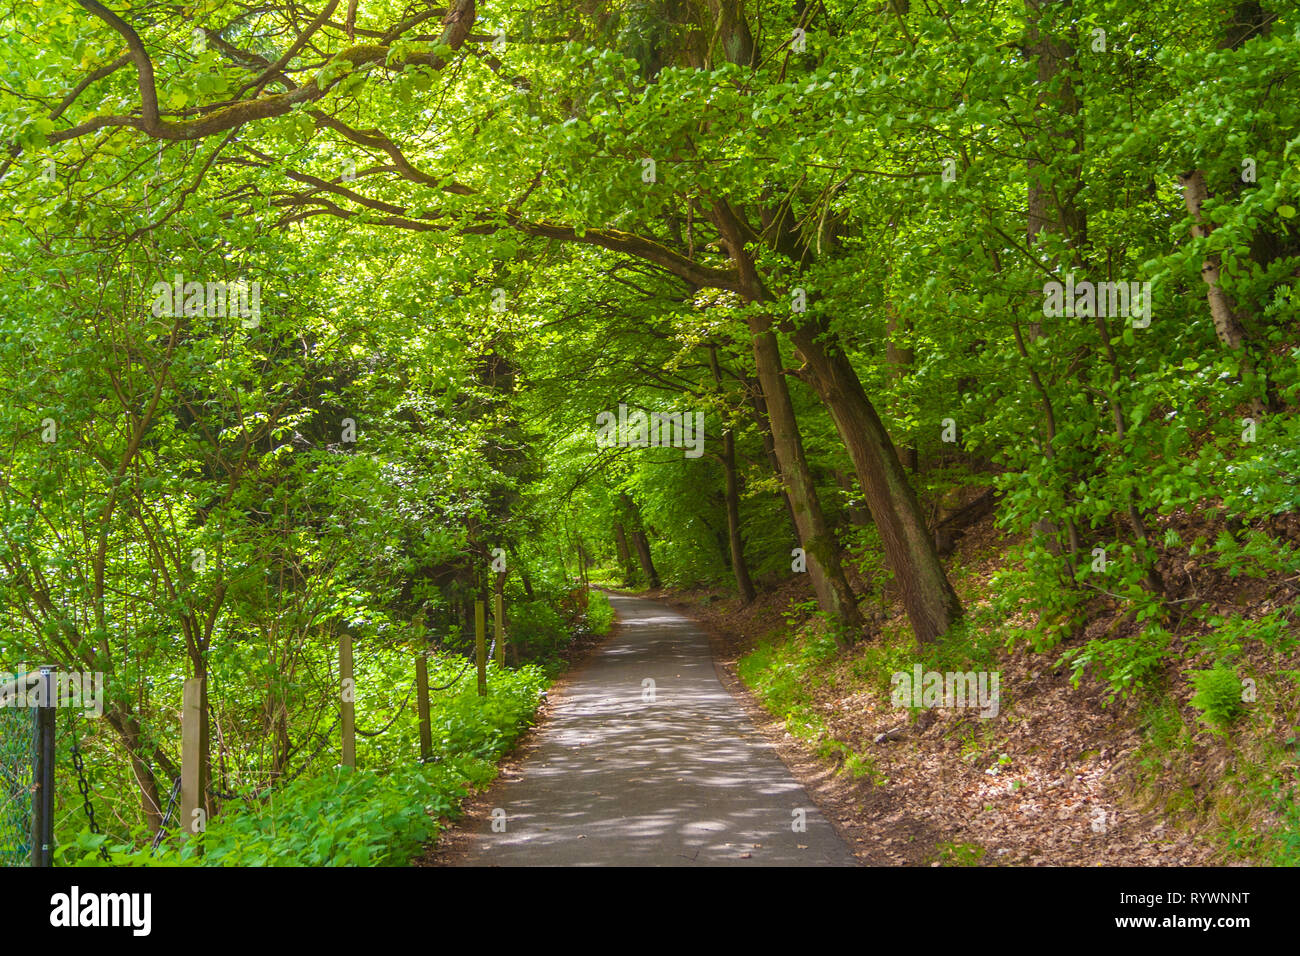 Un asfalto strada asfaltata che conduce a una foresta. Sul lato destro sono gli alberi che crescono su un terreno in pendenza. Luogo ideale per escursioni e passeggiate nella natura su un bel... Foto Stock